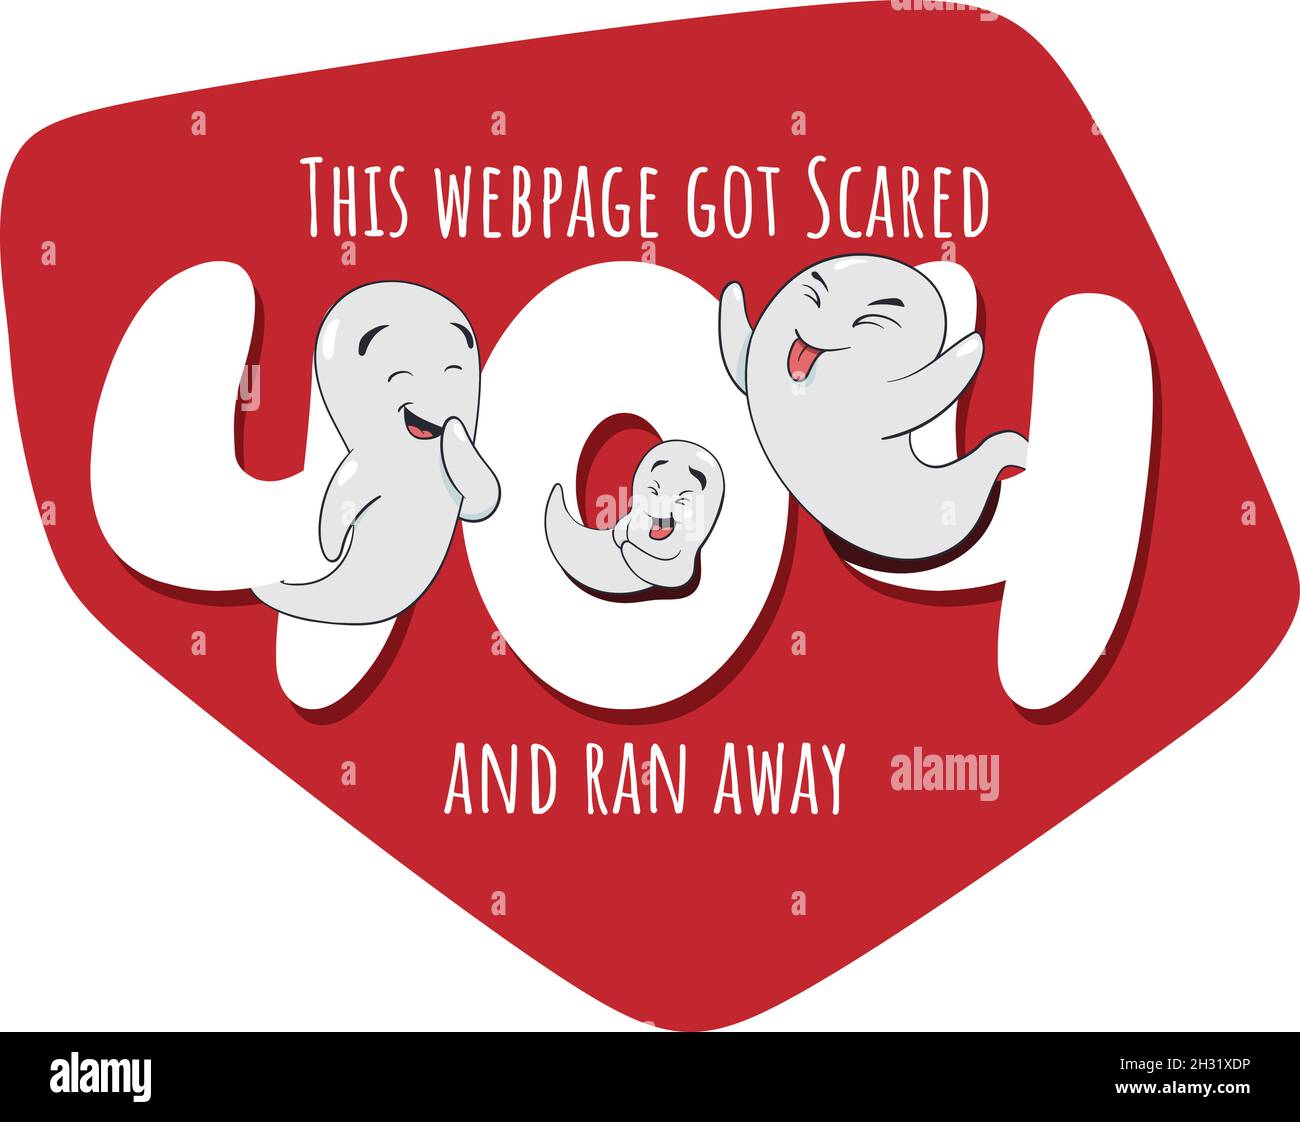 404 messaggio di errore. Messaggio pagina Web non trovata. Halloween cute Ghost ha spaventato la pagina web via messaggio di errore. Pagina Oops non trovata. Illustrazione Vettoriale